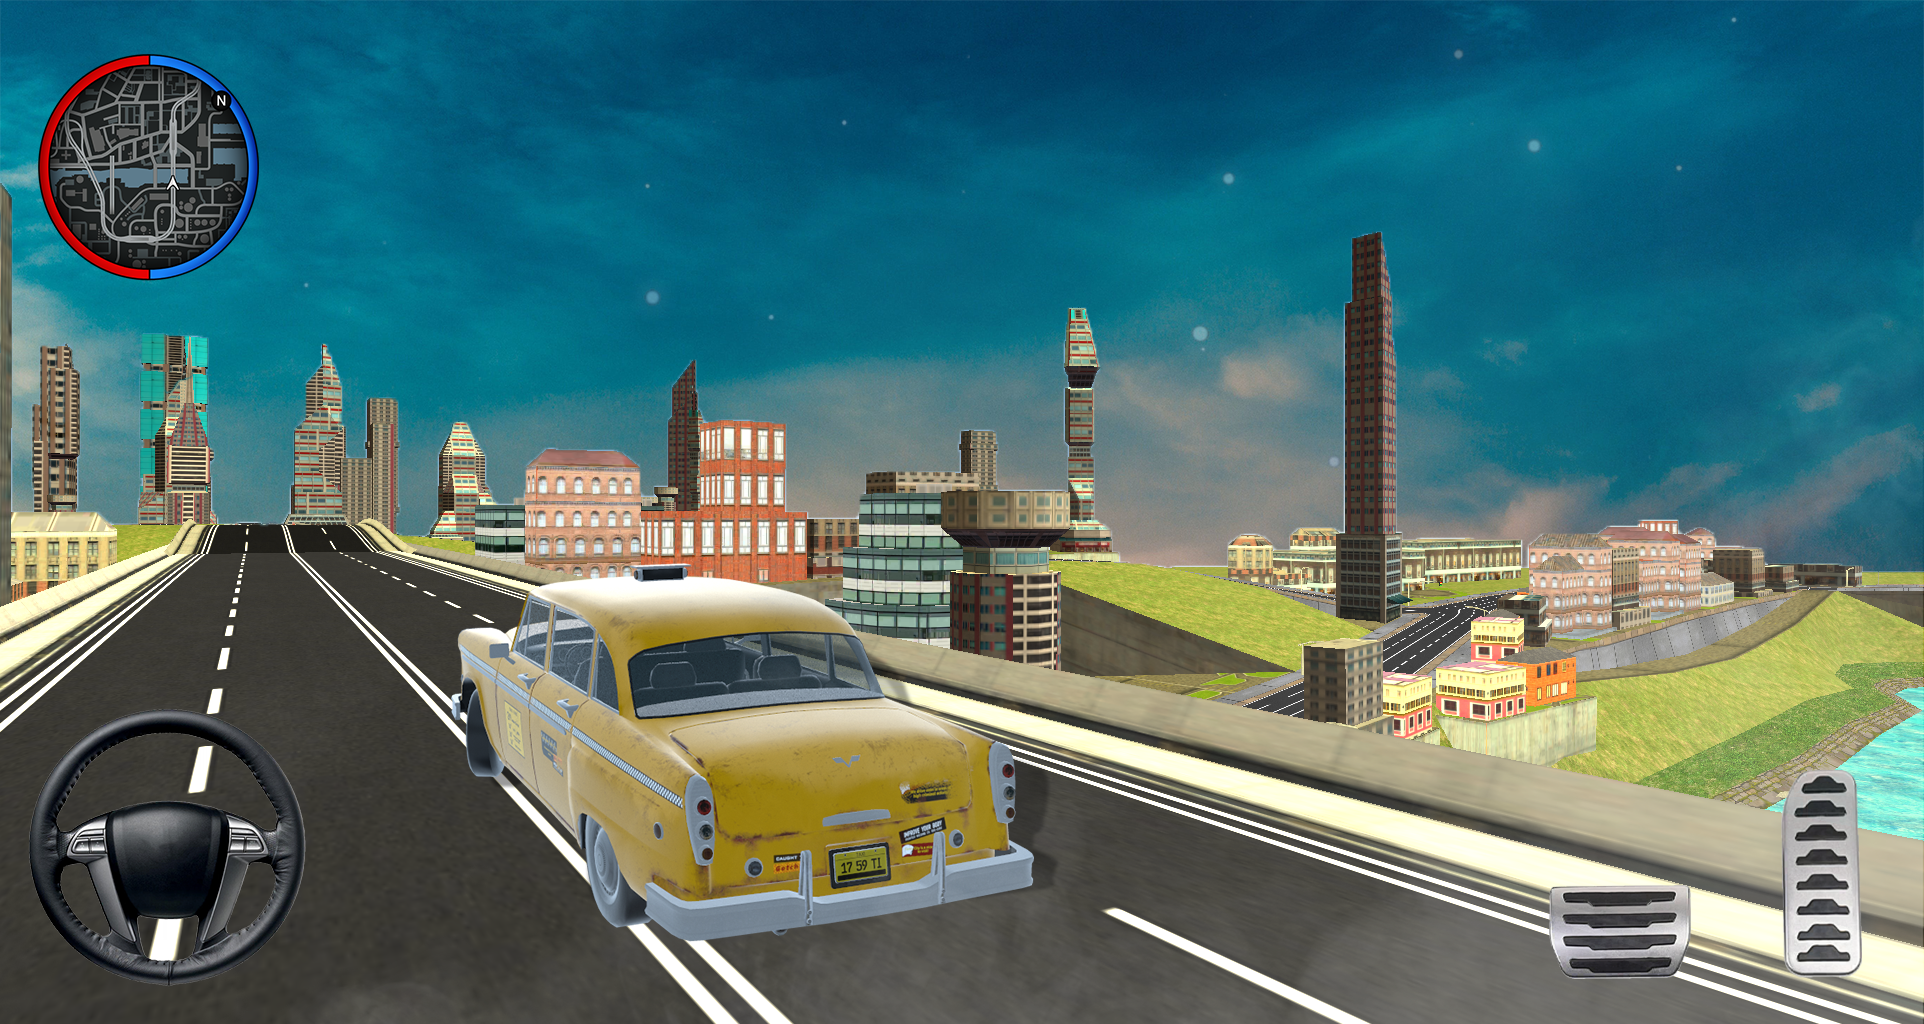 Taxi Simulator 3D - Taxi Games遊戲截圖